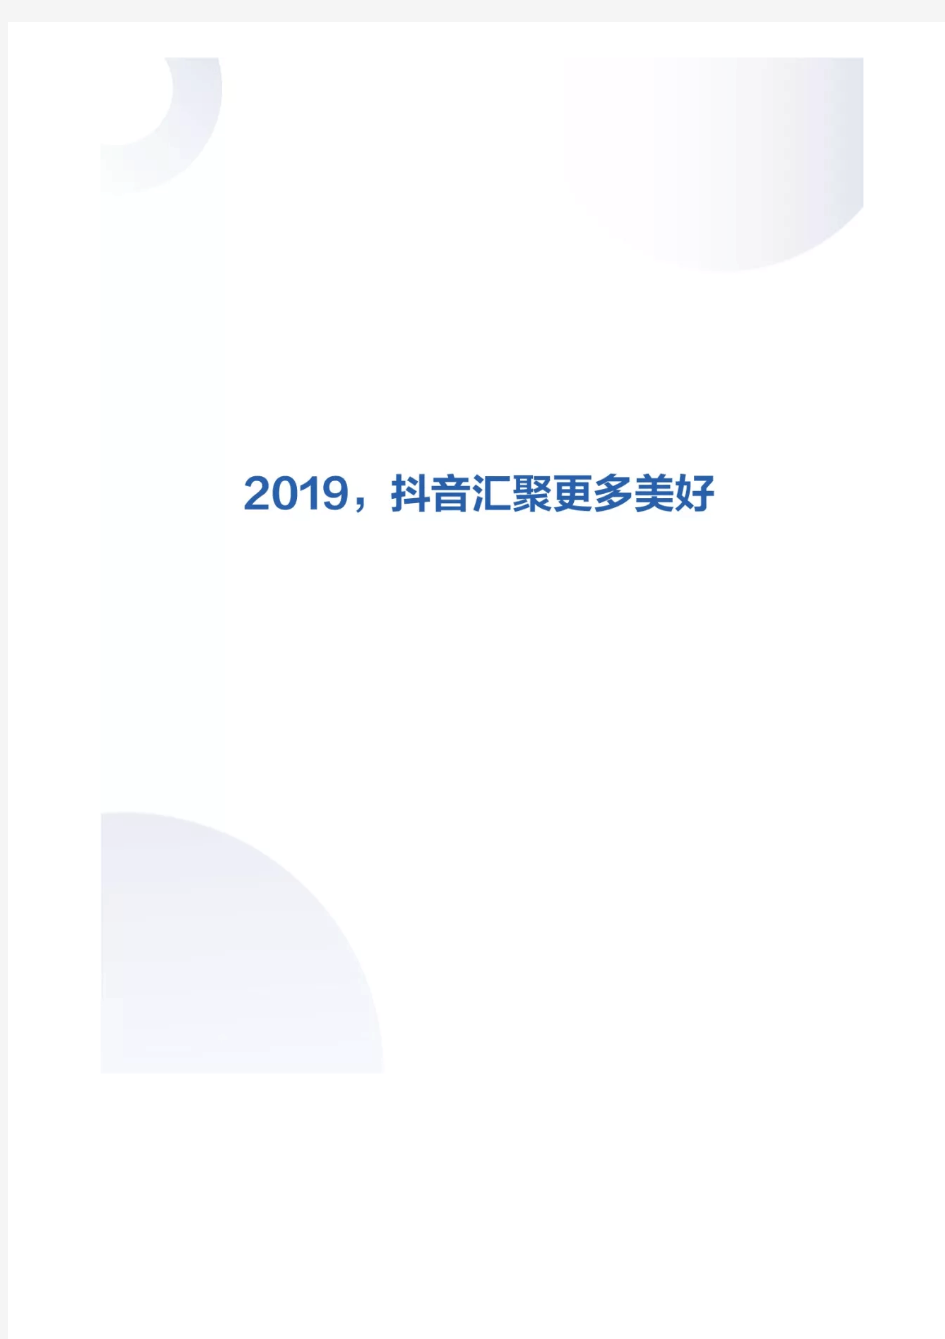 2019年抖音数据报告(完整版)